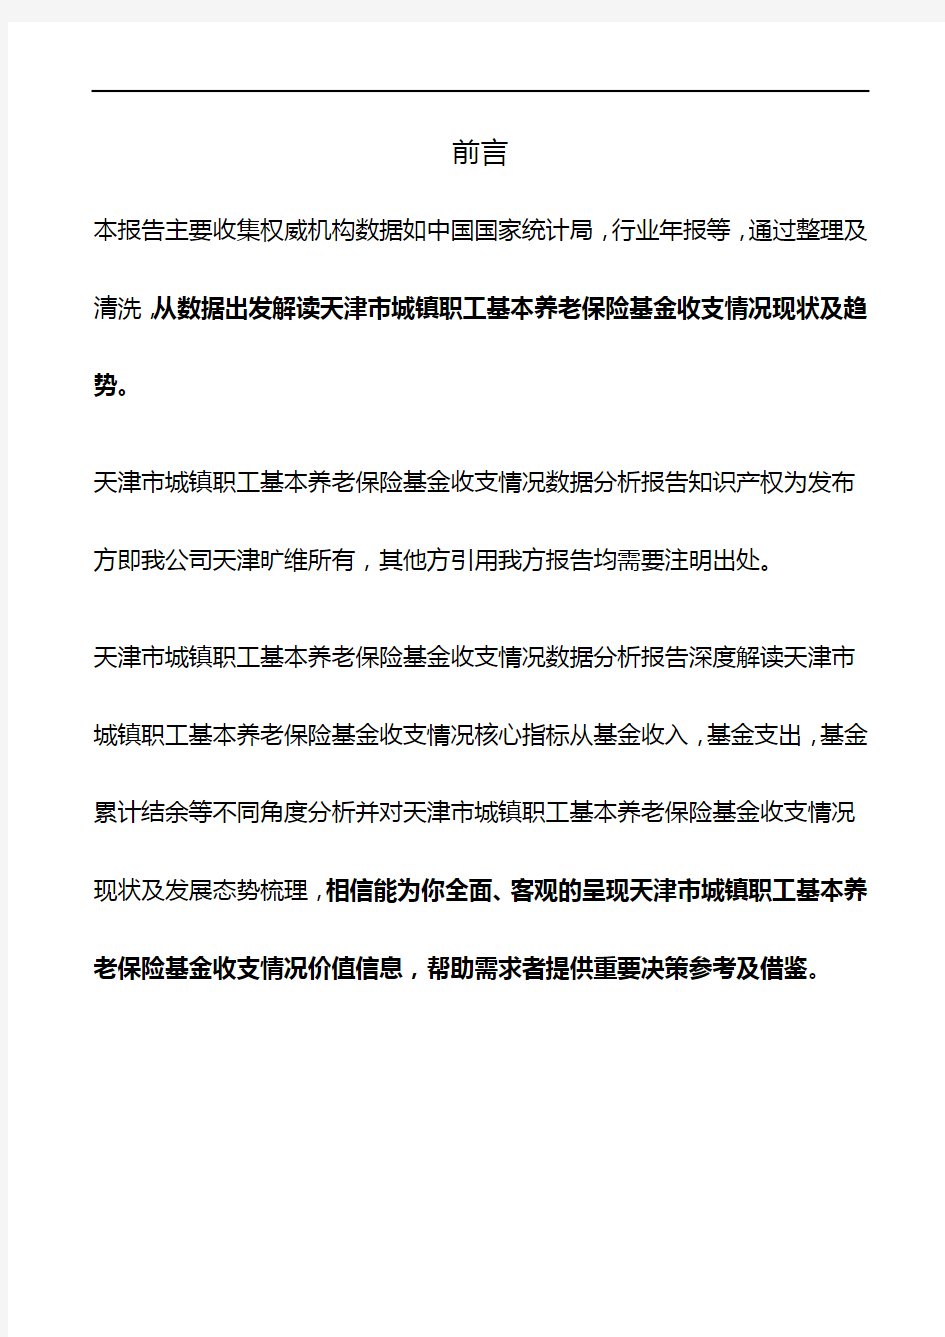 天津市城镇职工基本养老保险基金收支情况数据分析报告2019版